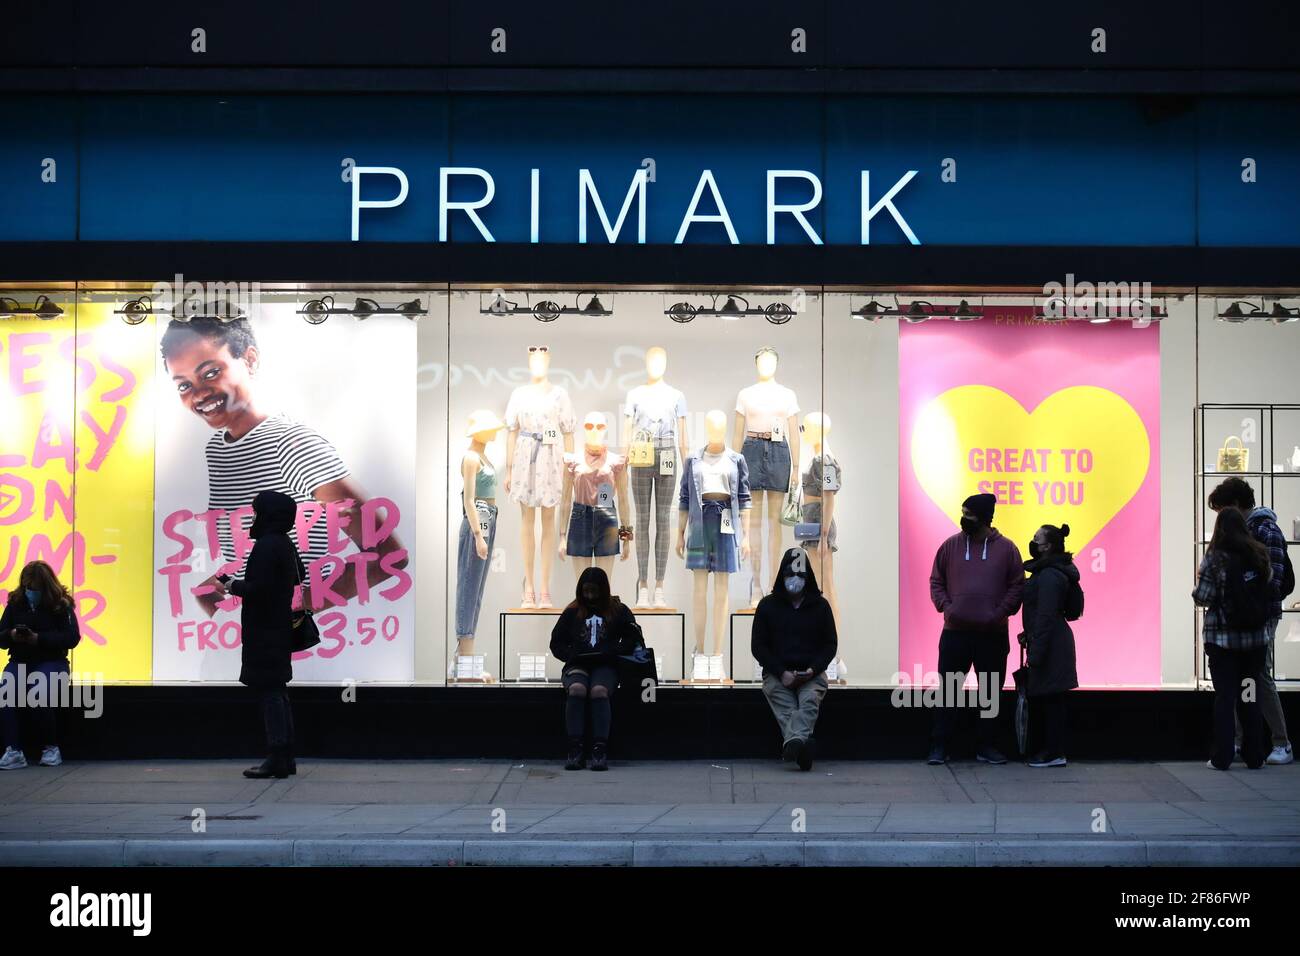 Am frühen Morgen stehen die Käufer vor dem Primark-Store in der Oxford Street in London Schlange und warten darauf, dass das Geschäft für die Kunden wieder geöffnet wird, da England einen weiteren Schritt zurück in Richtung Normalität unternimmt und die Sperrbeschränkungen weiter gelockert werden. Bilddatum: Montag, 12. April 2021. Stockfoto